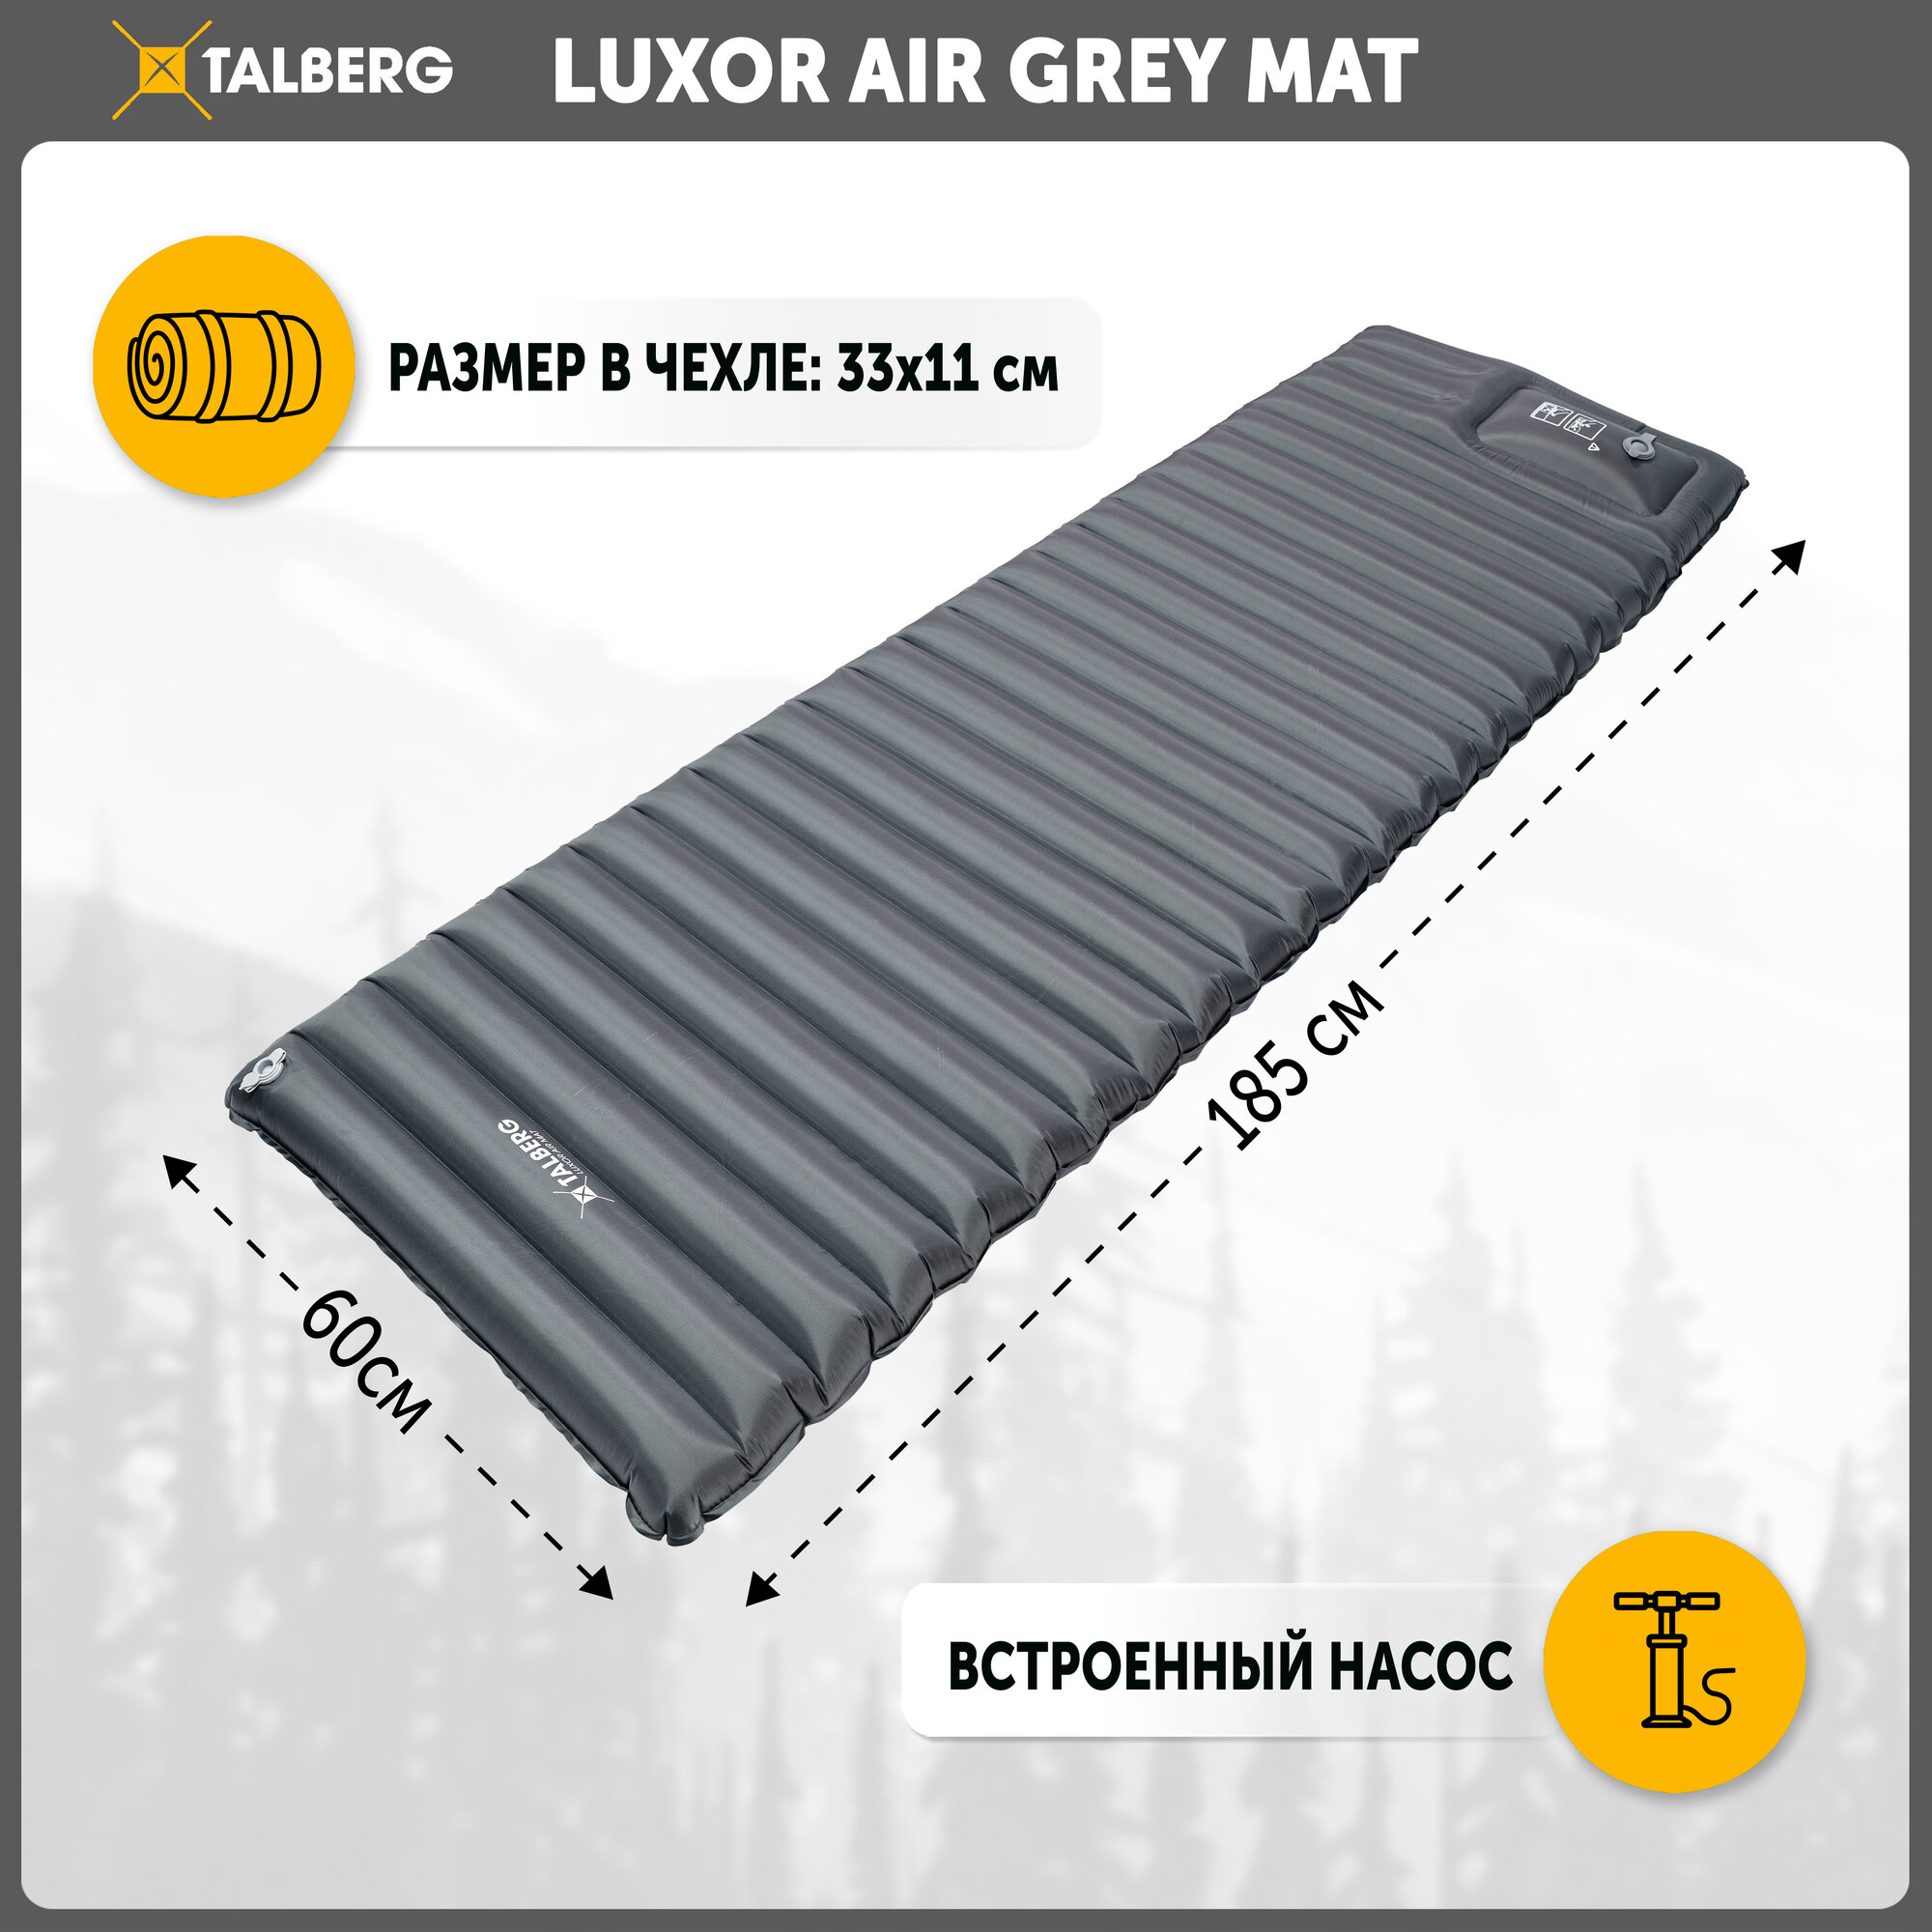 LUXOR AIR GREY MAT коврик надувной, 185х60х8, оливковый